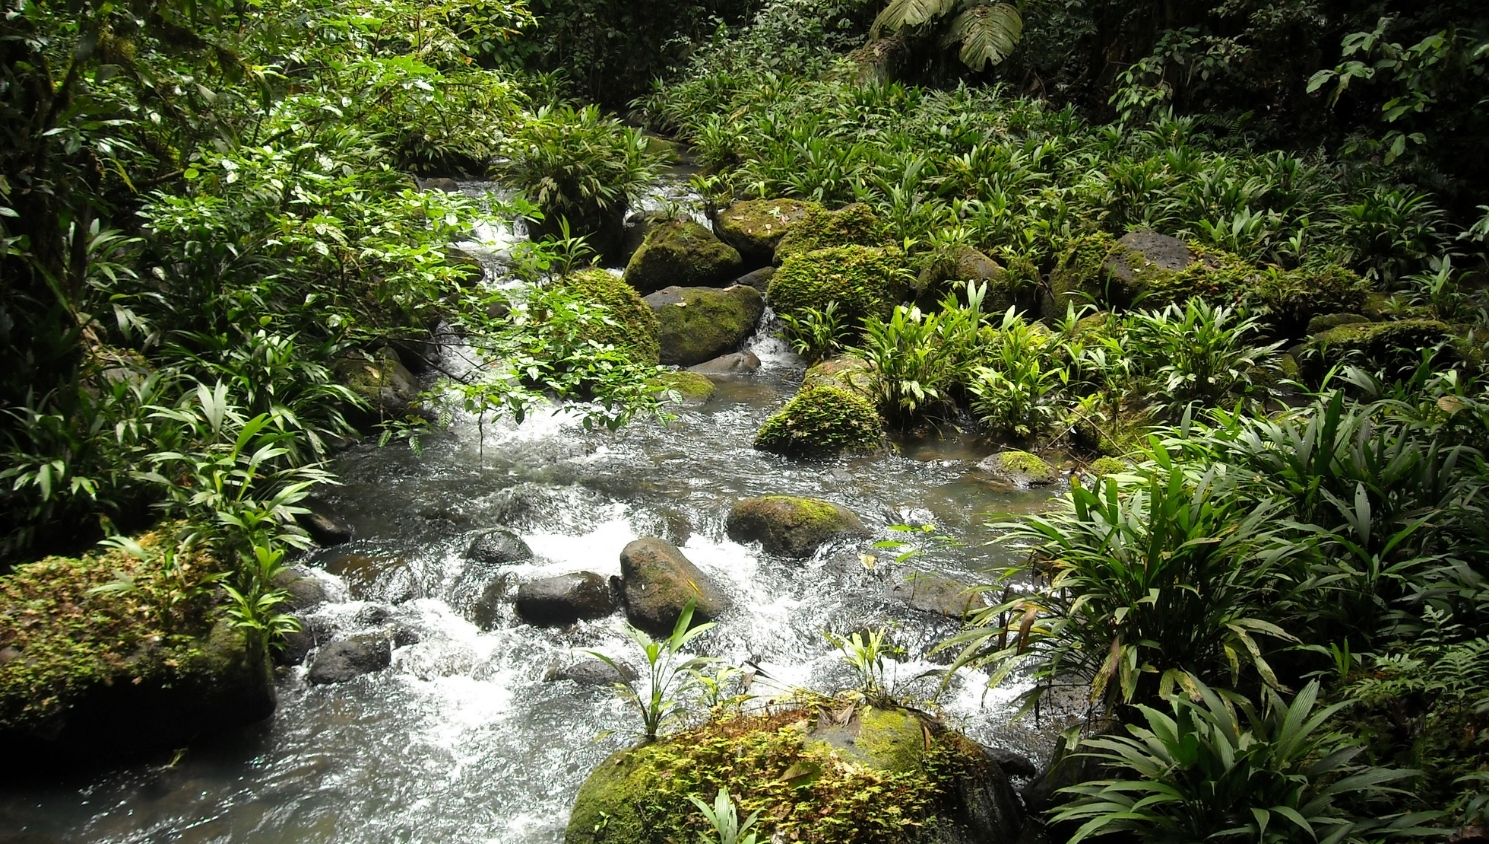 Stream in Costa Rica.